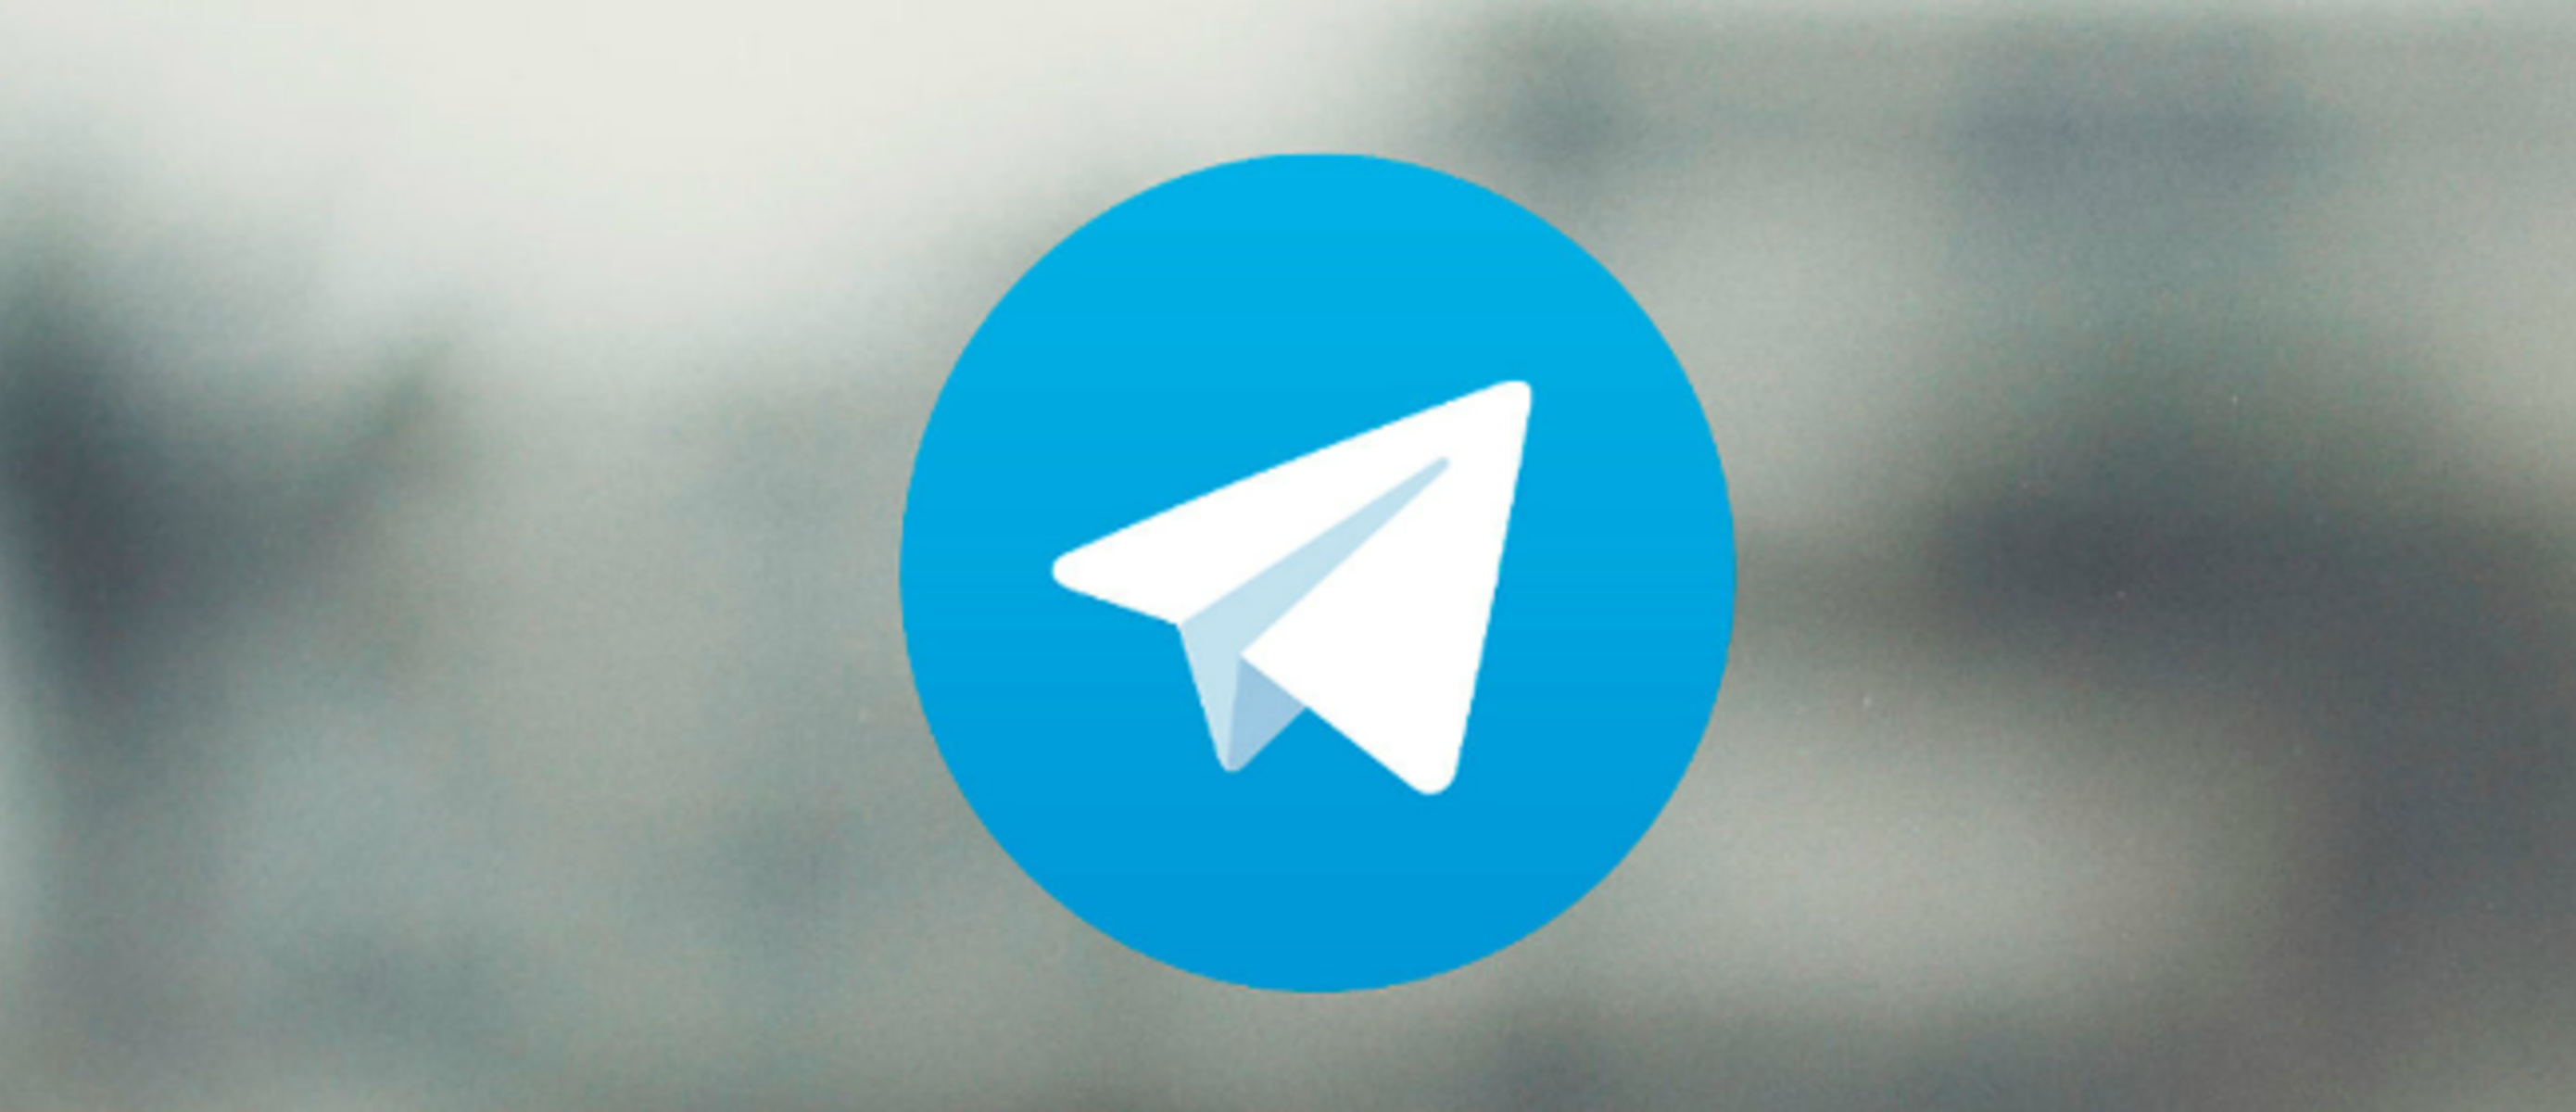 Фото для телеграмма. Телеграм. Логотип телеграм. Значок телеграм.